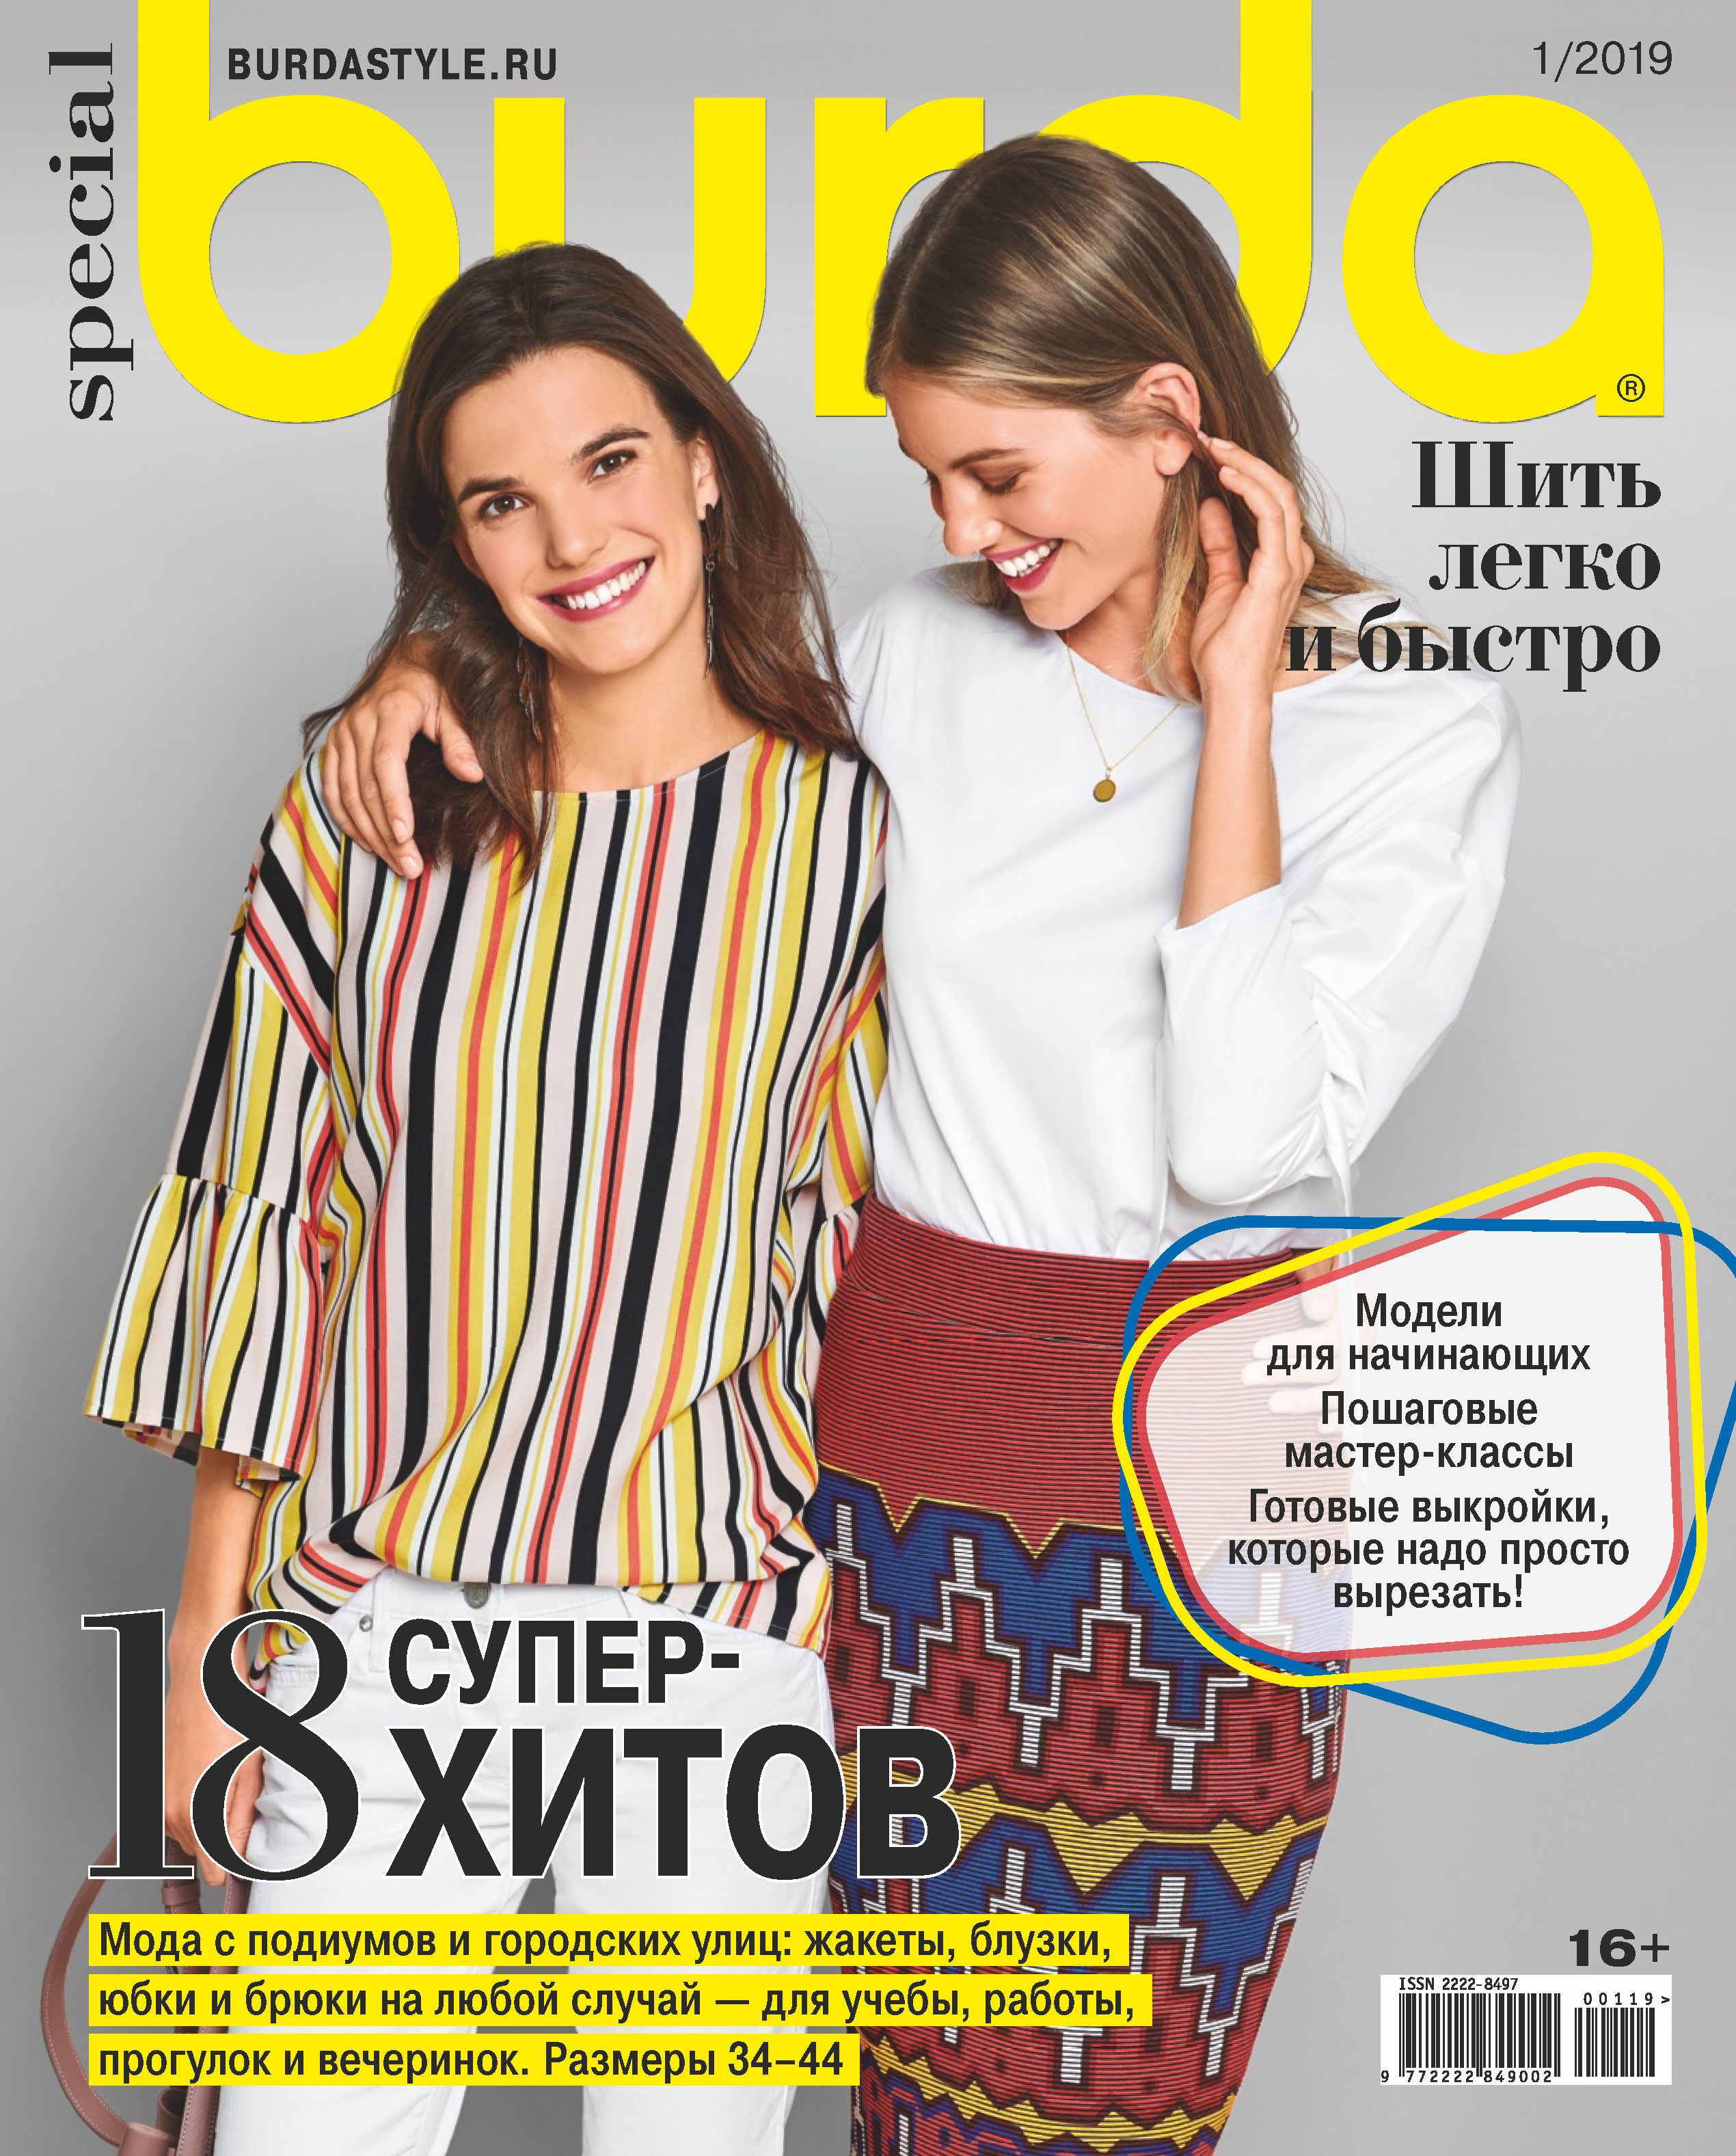 Burda Special№01/2019